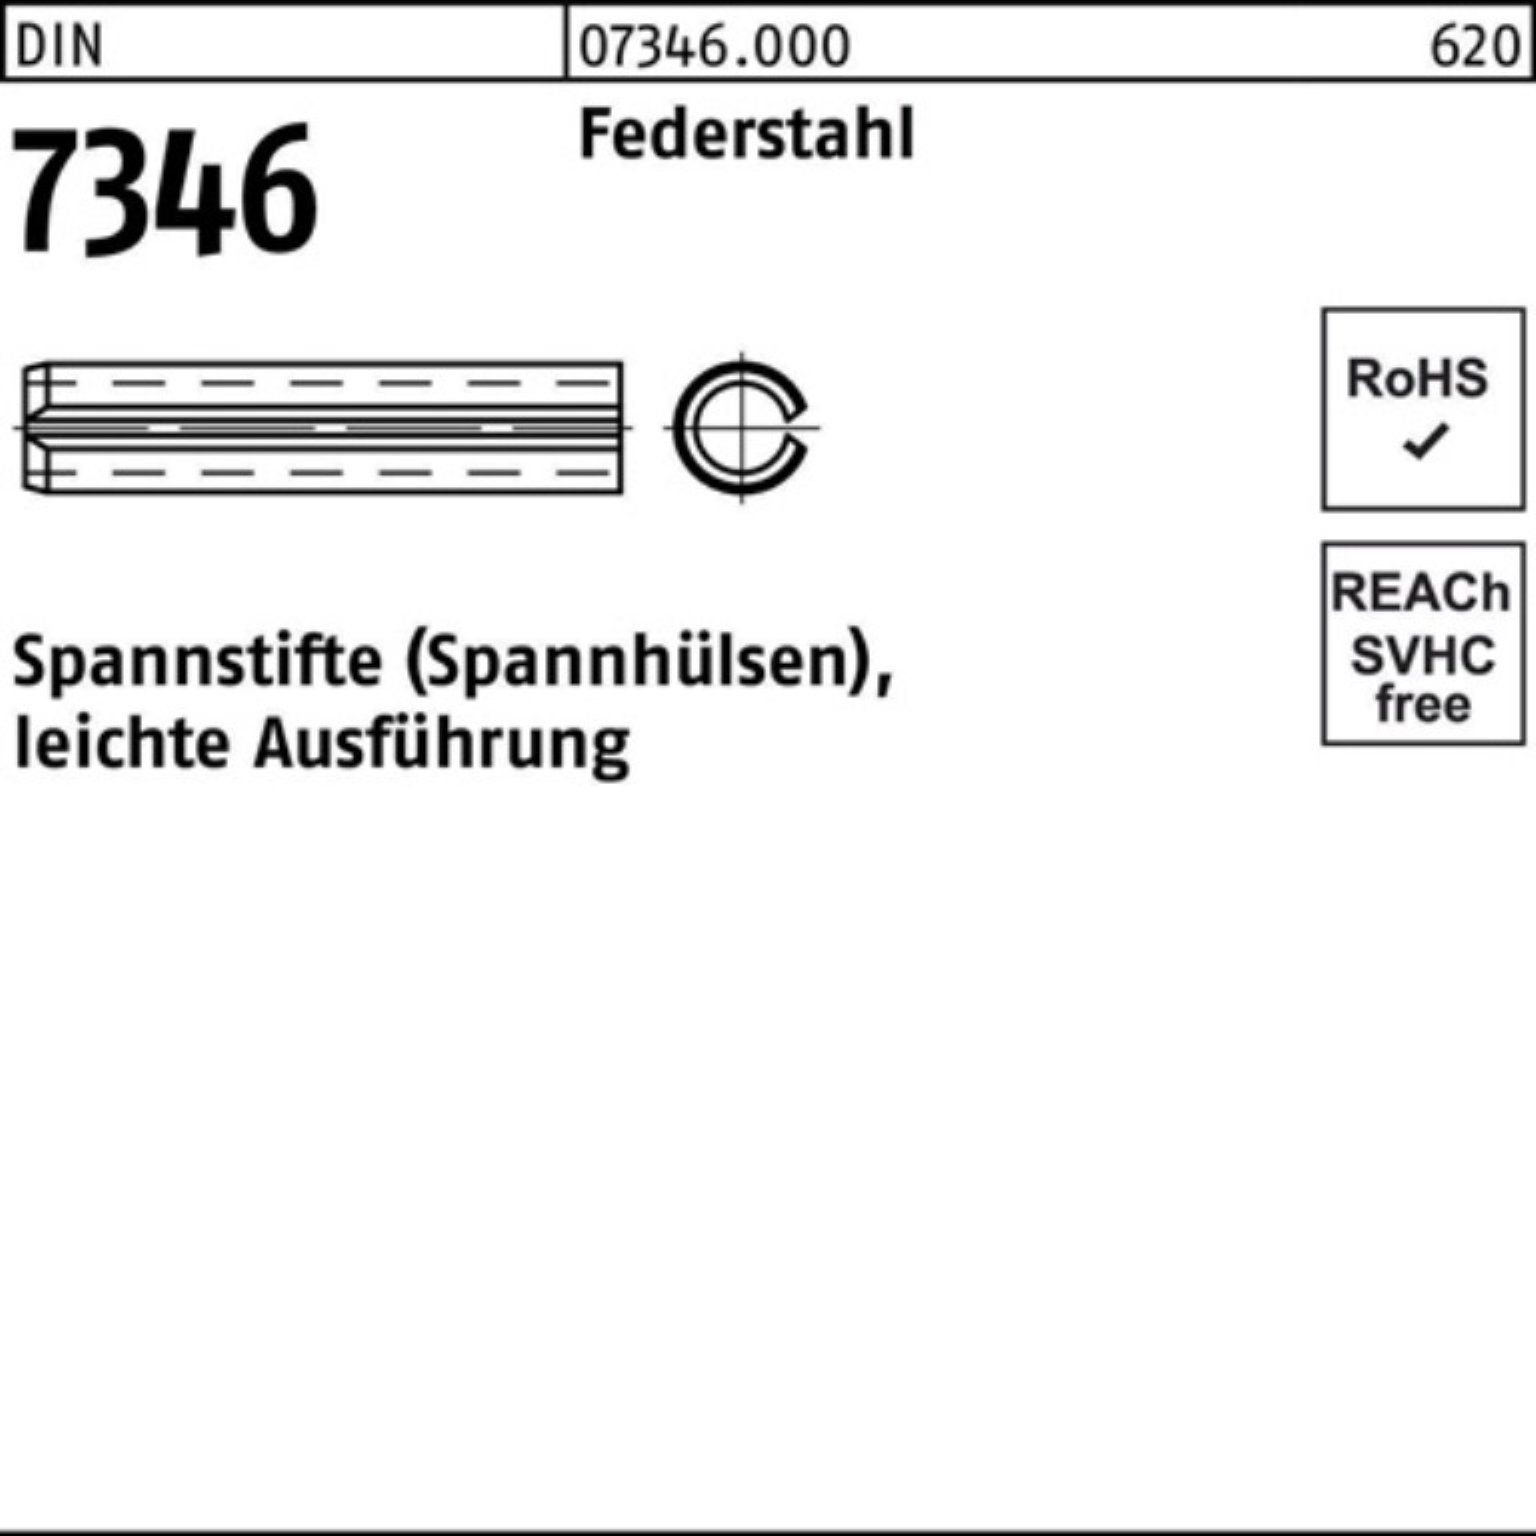 Reyher Spannstift 100er Pack Spannstift 7346/ISO Ausf DIN 6x leichte Federstahl 13337 70